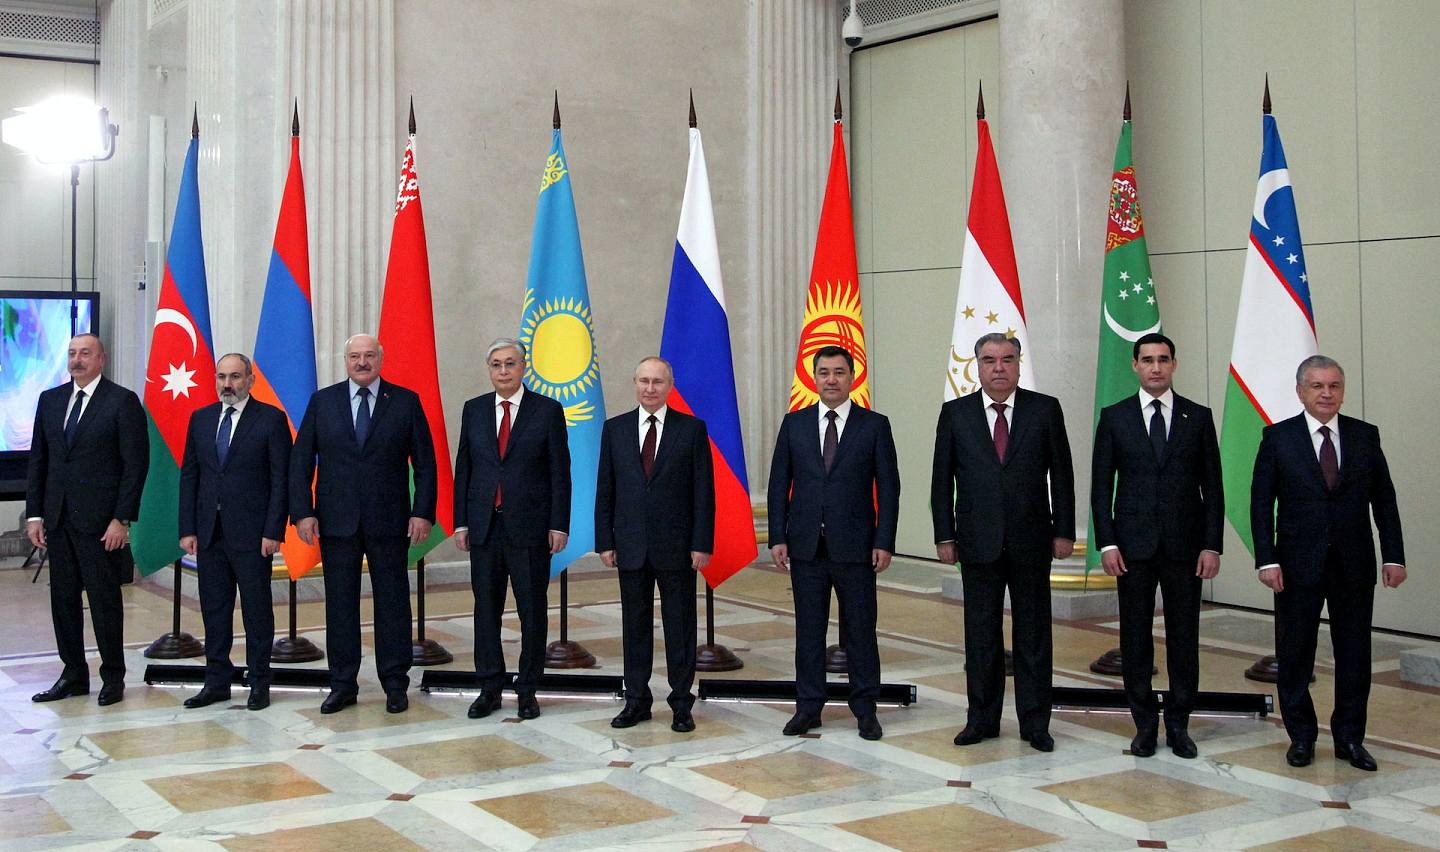 2022年12月26日，（左起）阿塞拜疆總統阿利耶夫、亞美尼亞總理帕希尼揚、白羅斯總統盧卡申科、哈薩克斯坦總統托卡耶夫、俄羅斯總統普京、吉爾吉斯斯坦總統扎帕羅夫、塔吉克斯坦總統拉赫蒙、土庫曼斯坦總統別爾德穆哈梅多夫及烏茲別克斯坦總統米爾濟約耶夫出席在聖彼得堡舉行的獨聯體峰會。（Reuters）